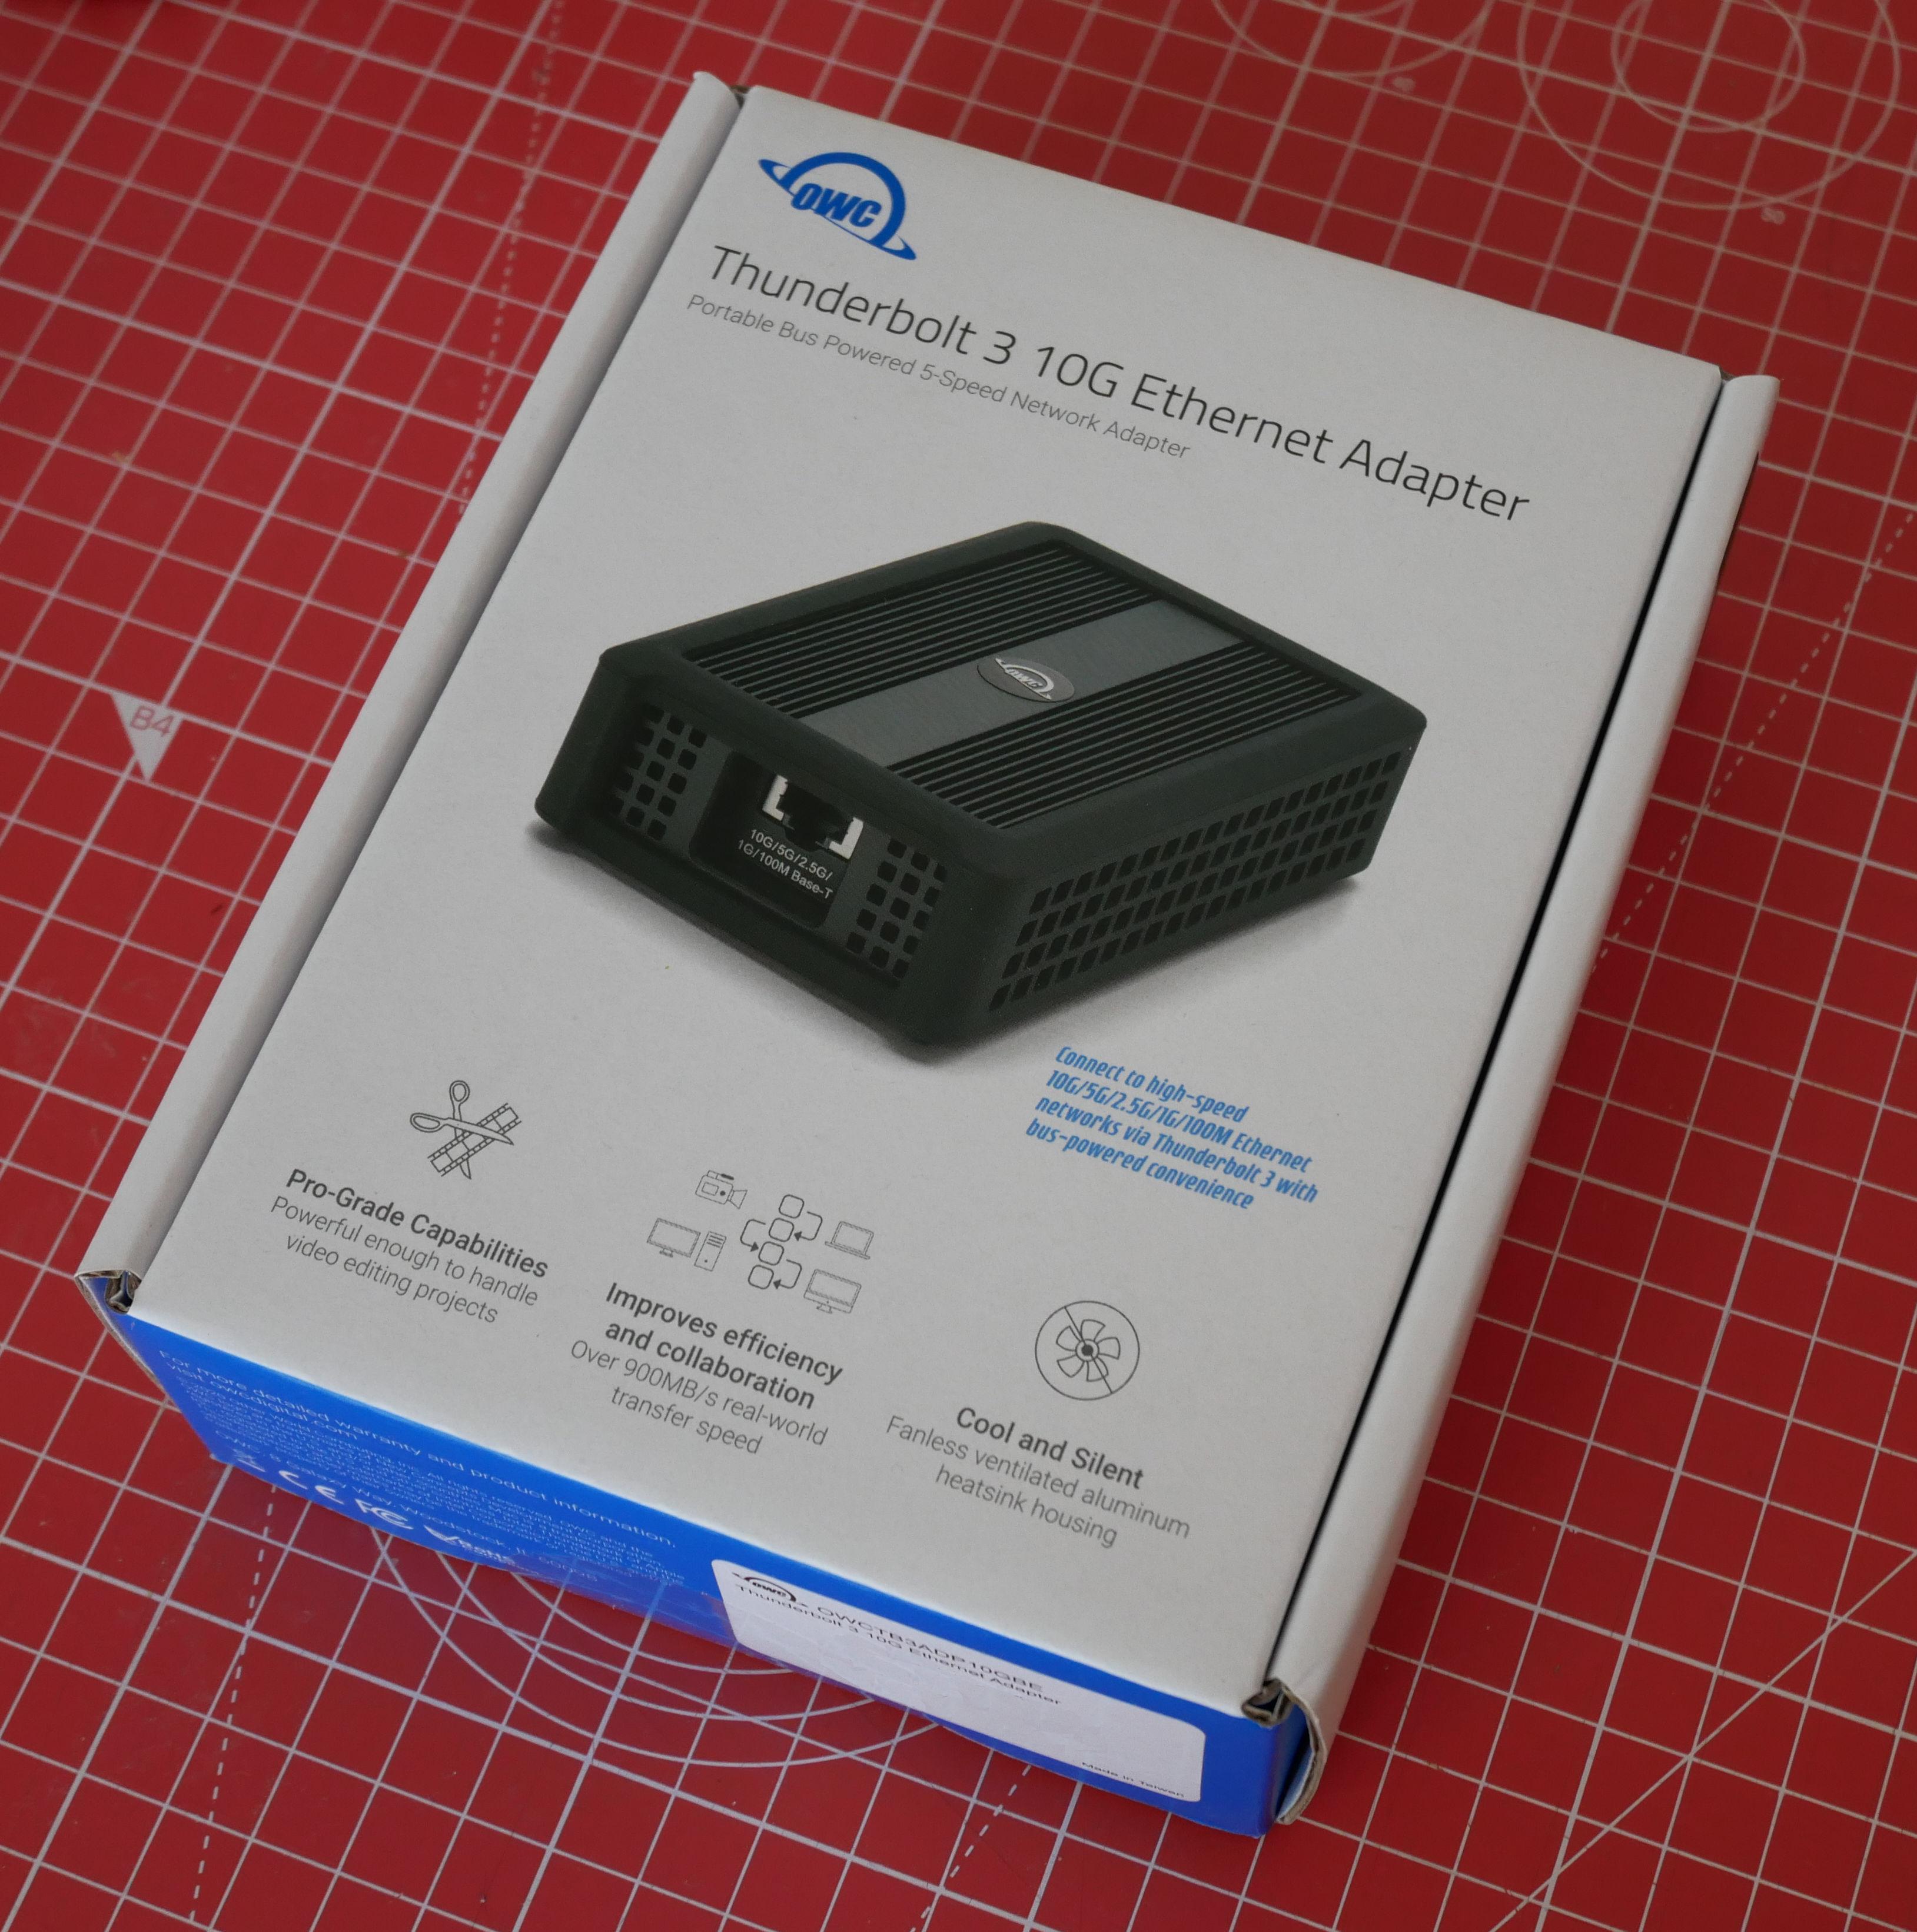 Emballage de l'adaptateur Thunderbold 3 vers Ethernet 10G de OWC